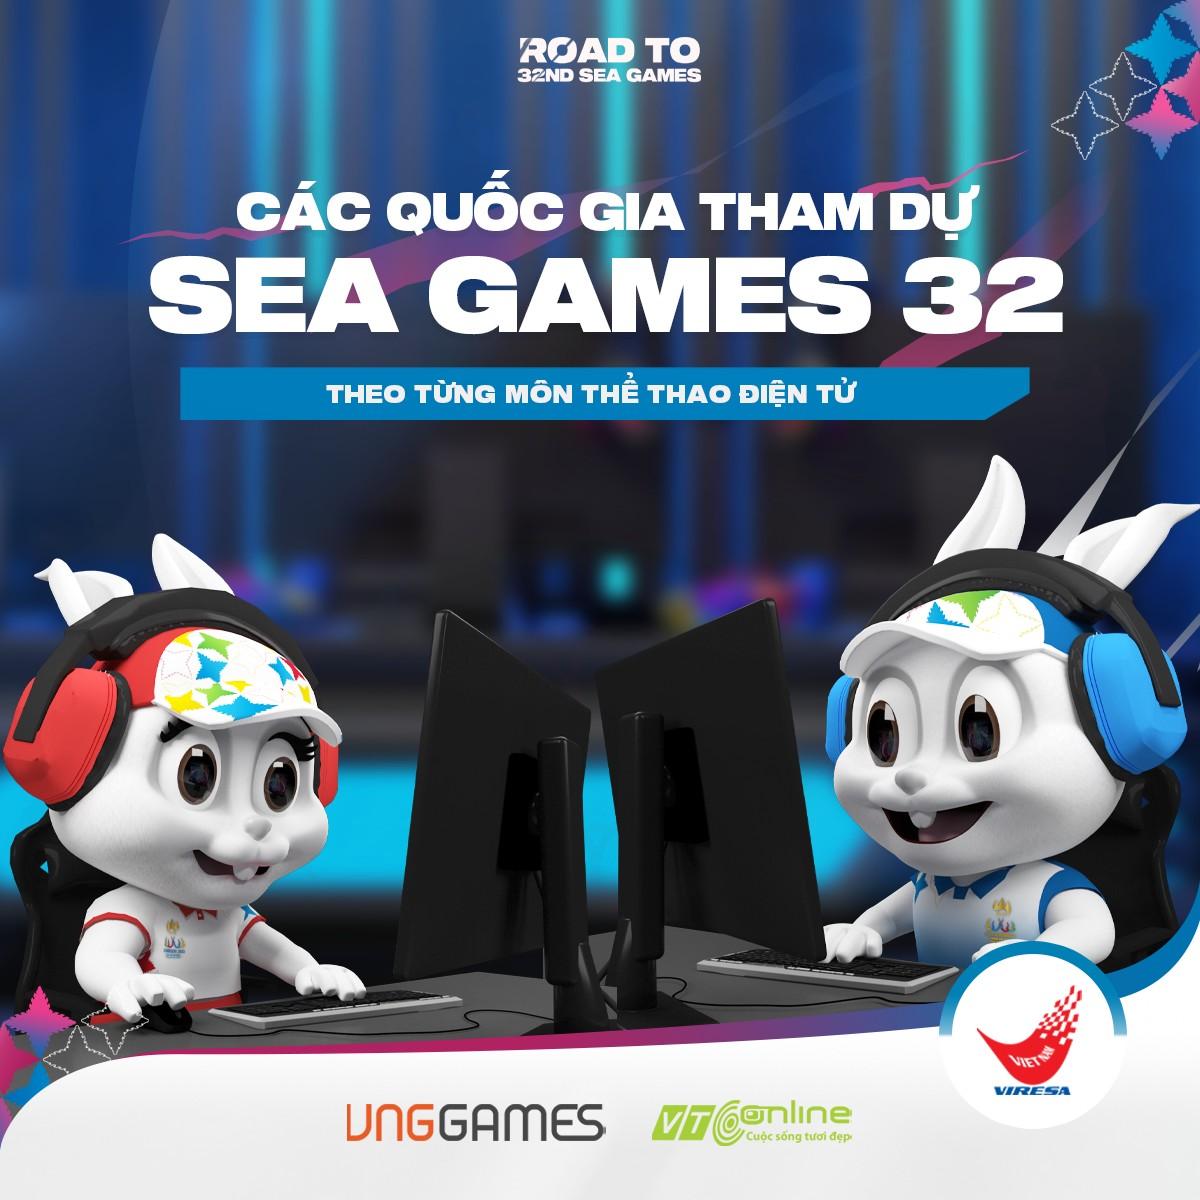 Các đội tuyển eSports Việt Nam sẽ gặp những đối thủ nào tại SEA Games 32?